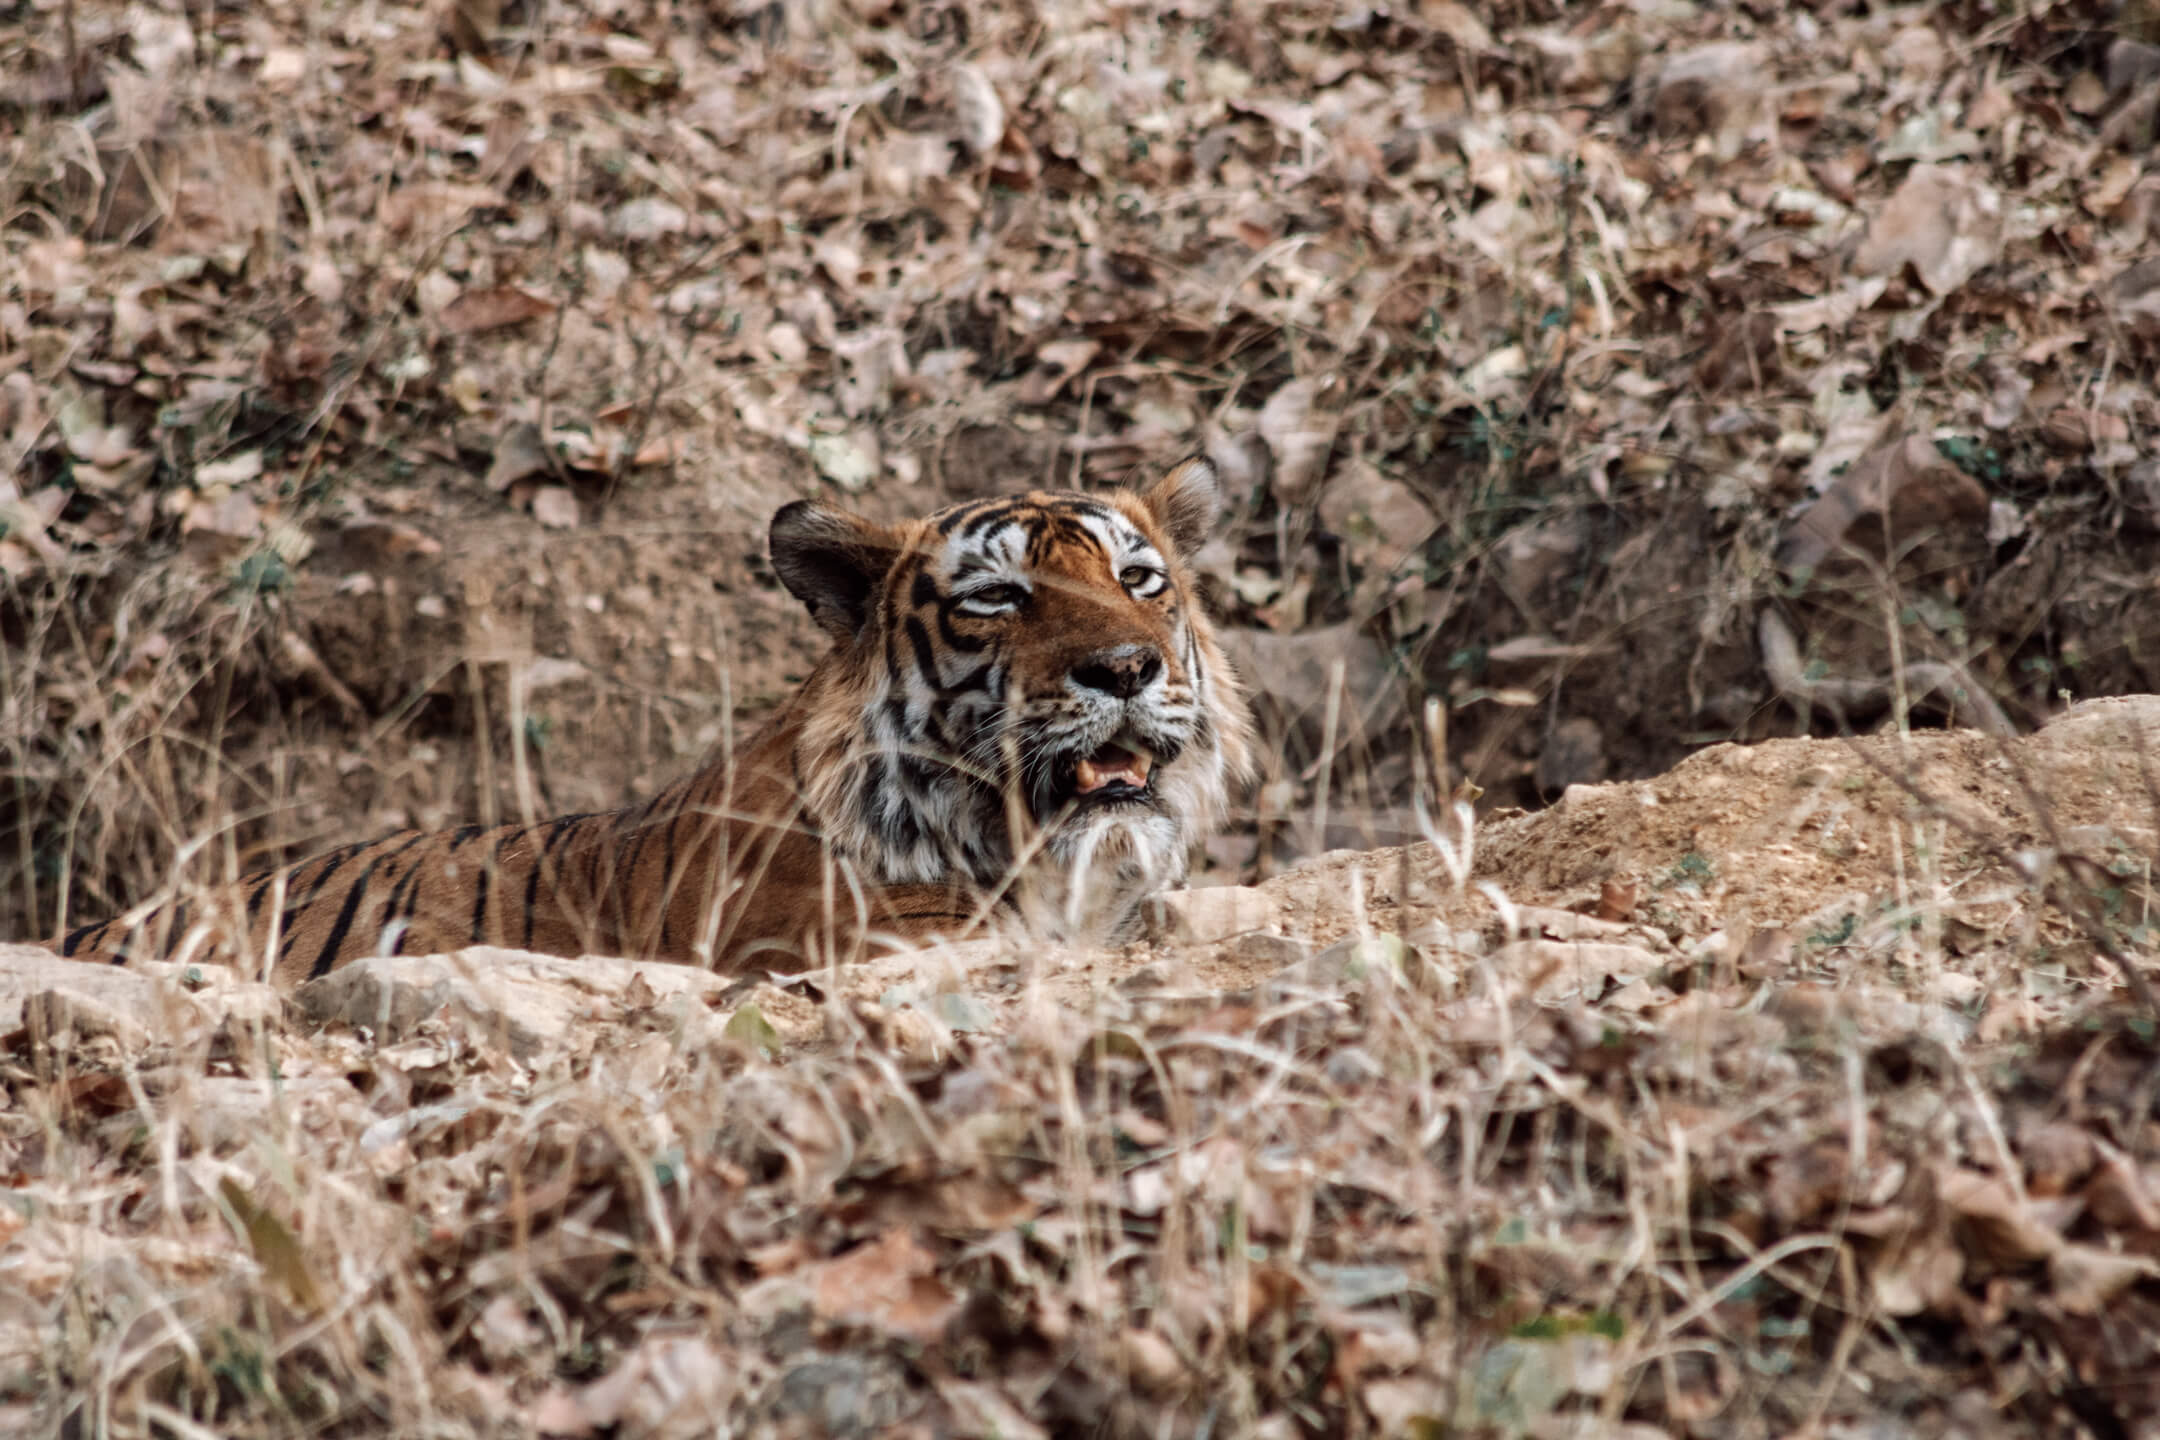 Tiger at Ranthambore National Park